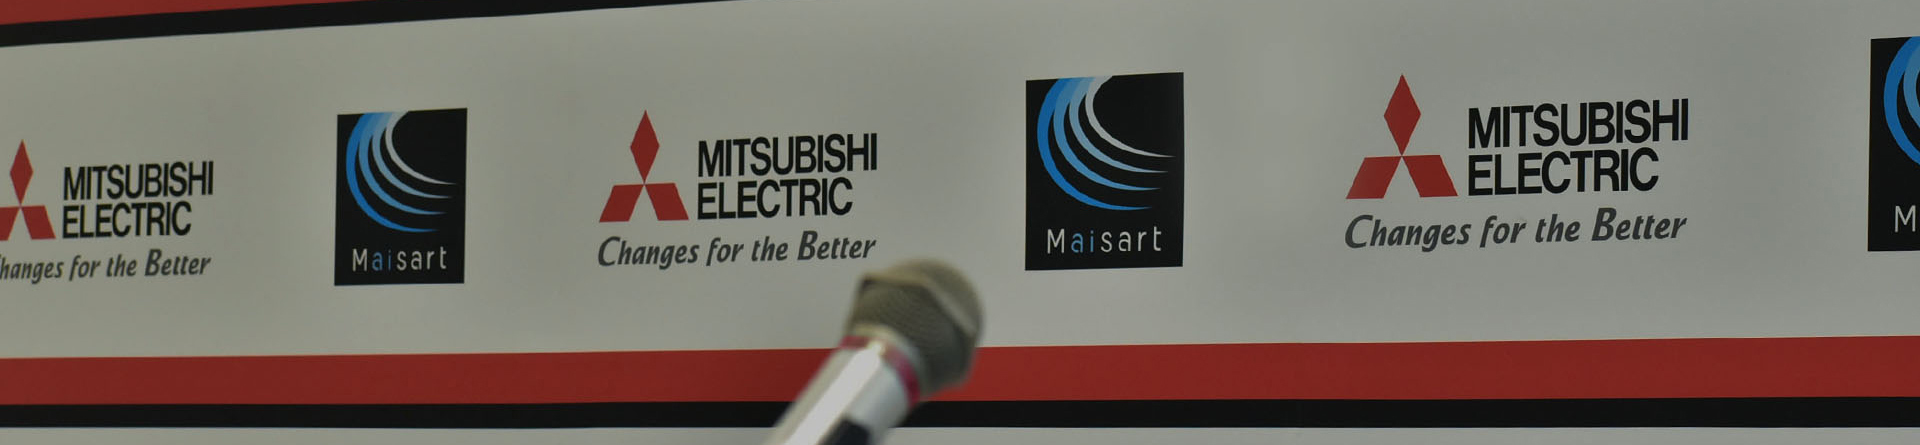 Trung tâm Giải pháp Tự động hóa của Mitsubishi Electric tại Đà Nẵng